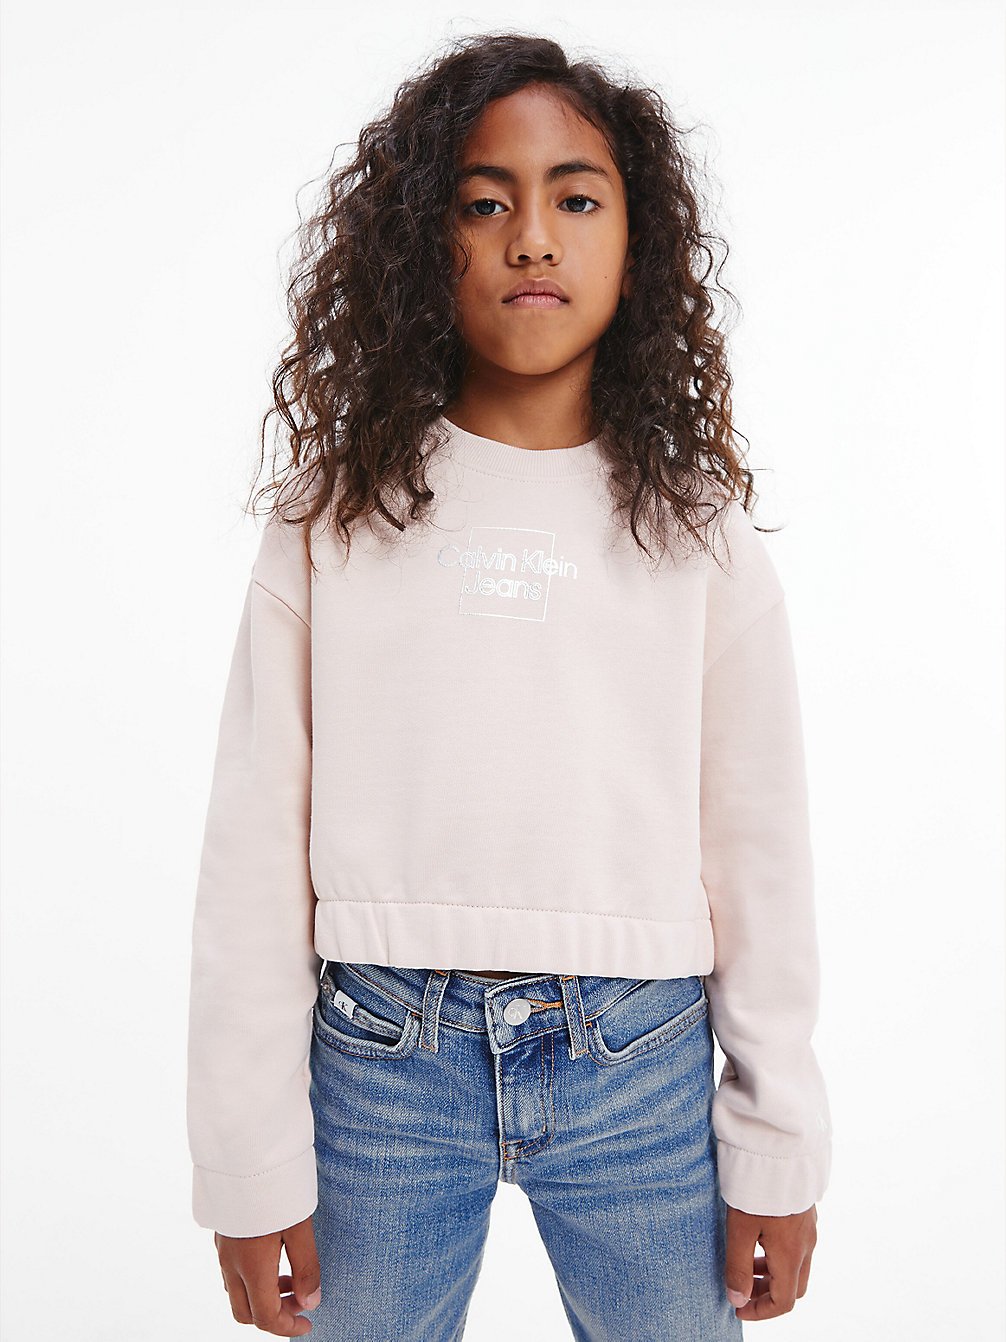 PALE ROSE Cropped Sweatshirt undefined girls Calvin Klein